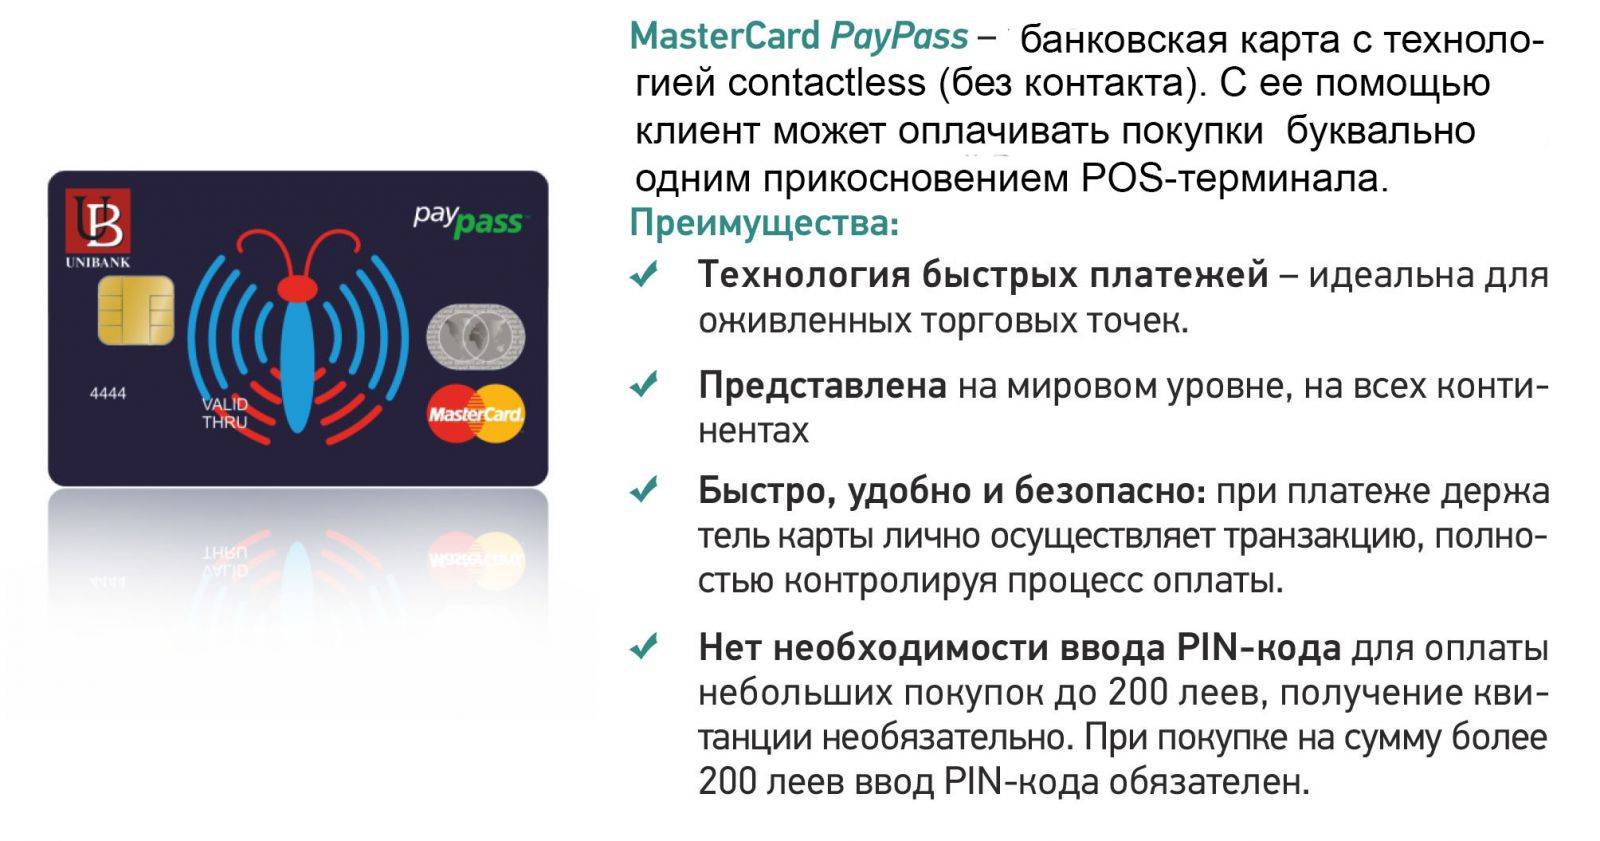 Бесконтактные карты сбербанка mastercard paypass и visa paywave